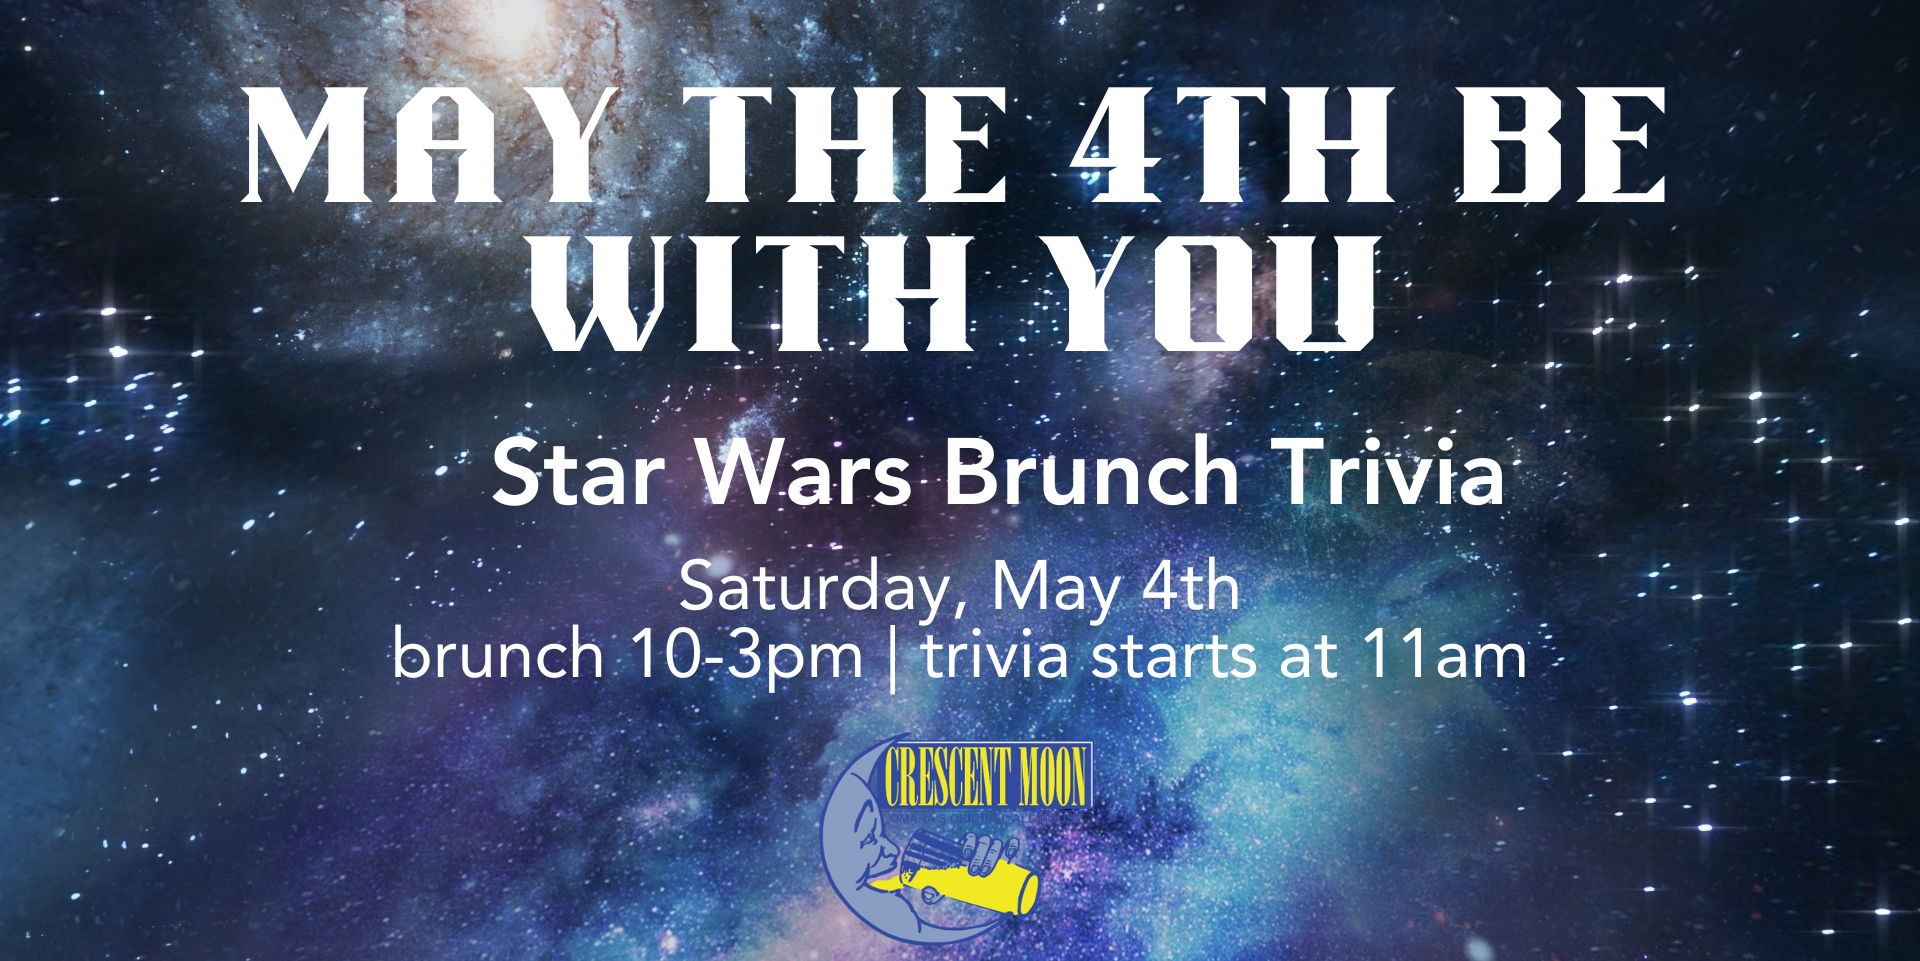 Star Wars Brunch Trivia promotional image